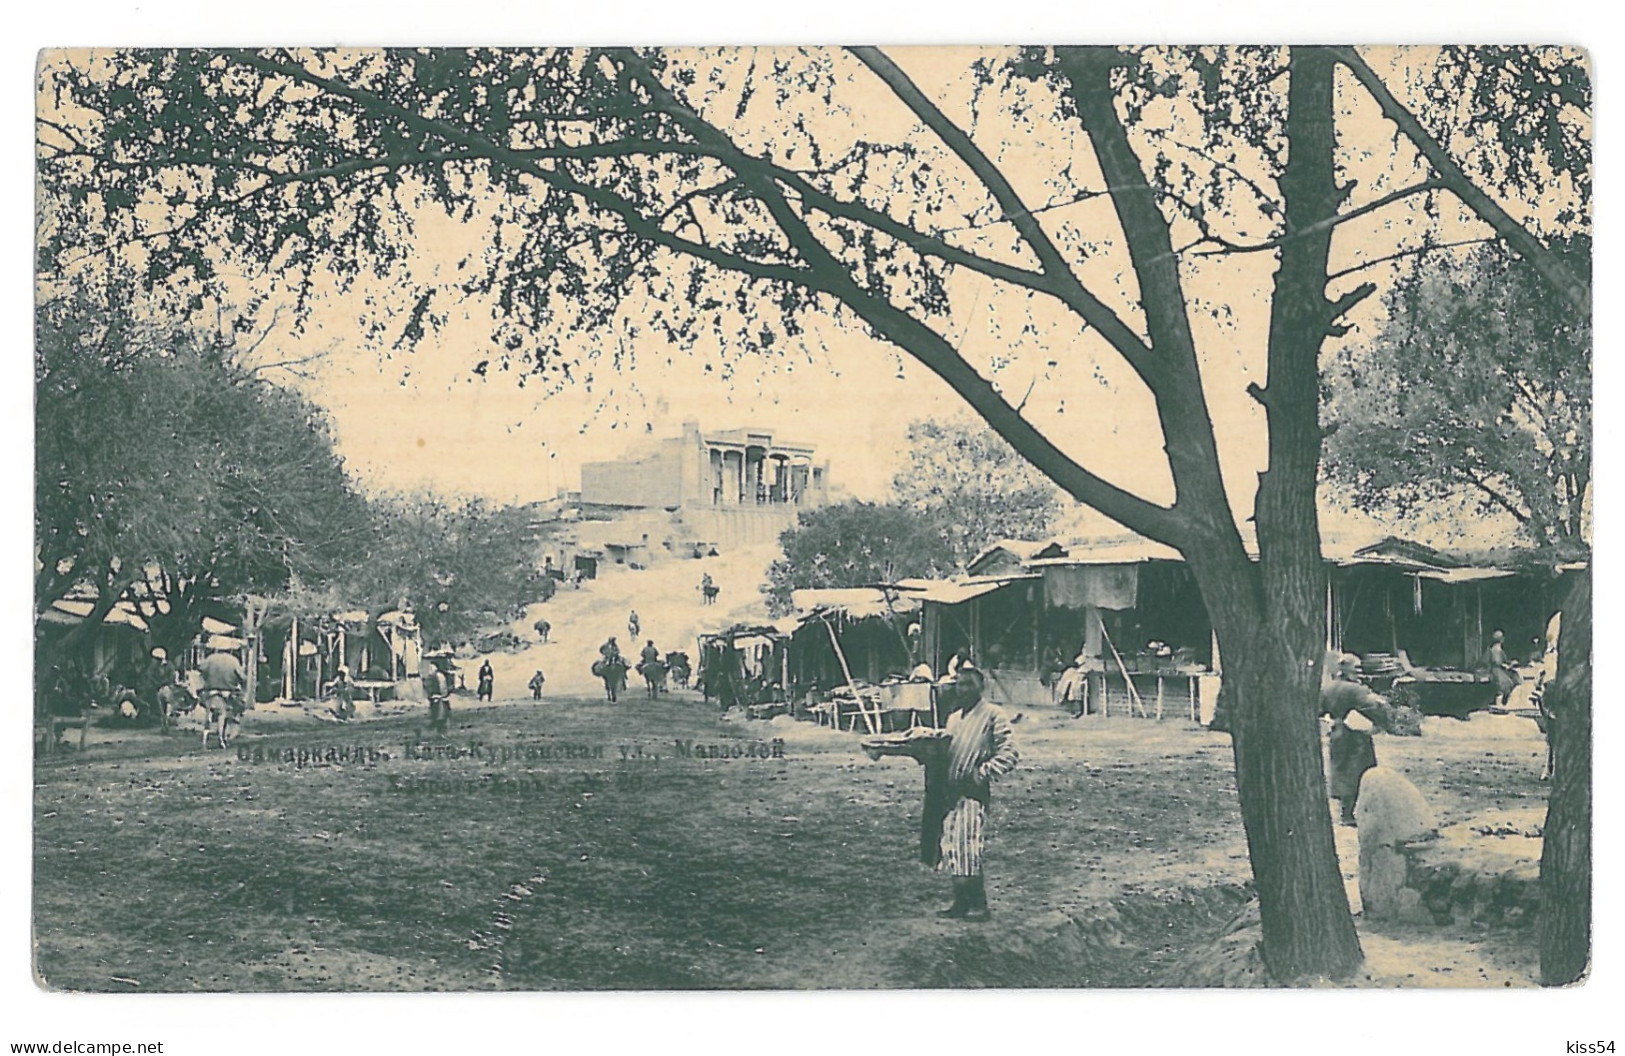 U 22 - 15533 SAMARKAND, Market, Uzbekistan - Old Postcard - Unused - 1914 - Uzbekistán